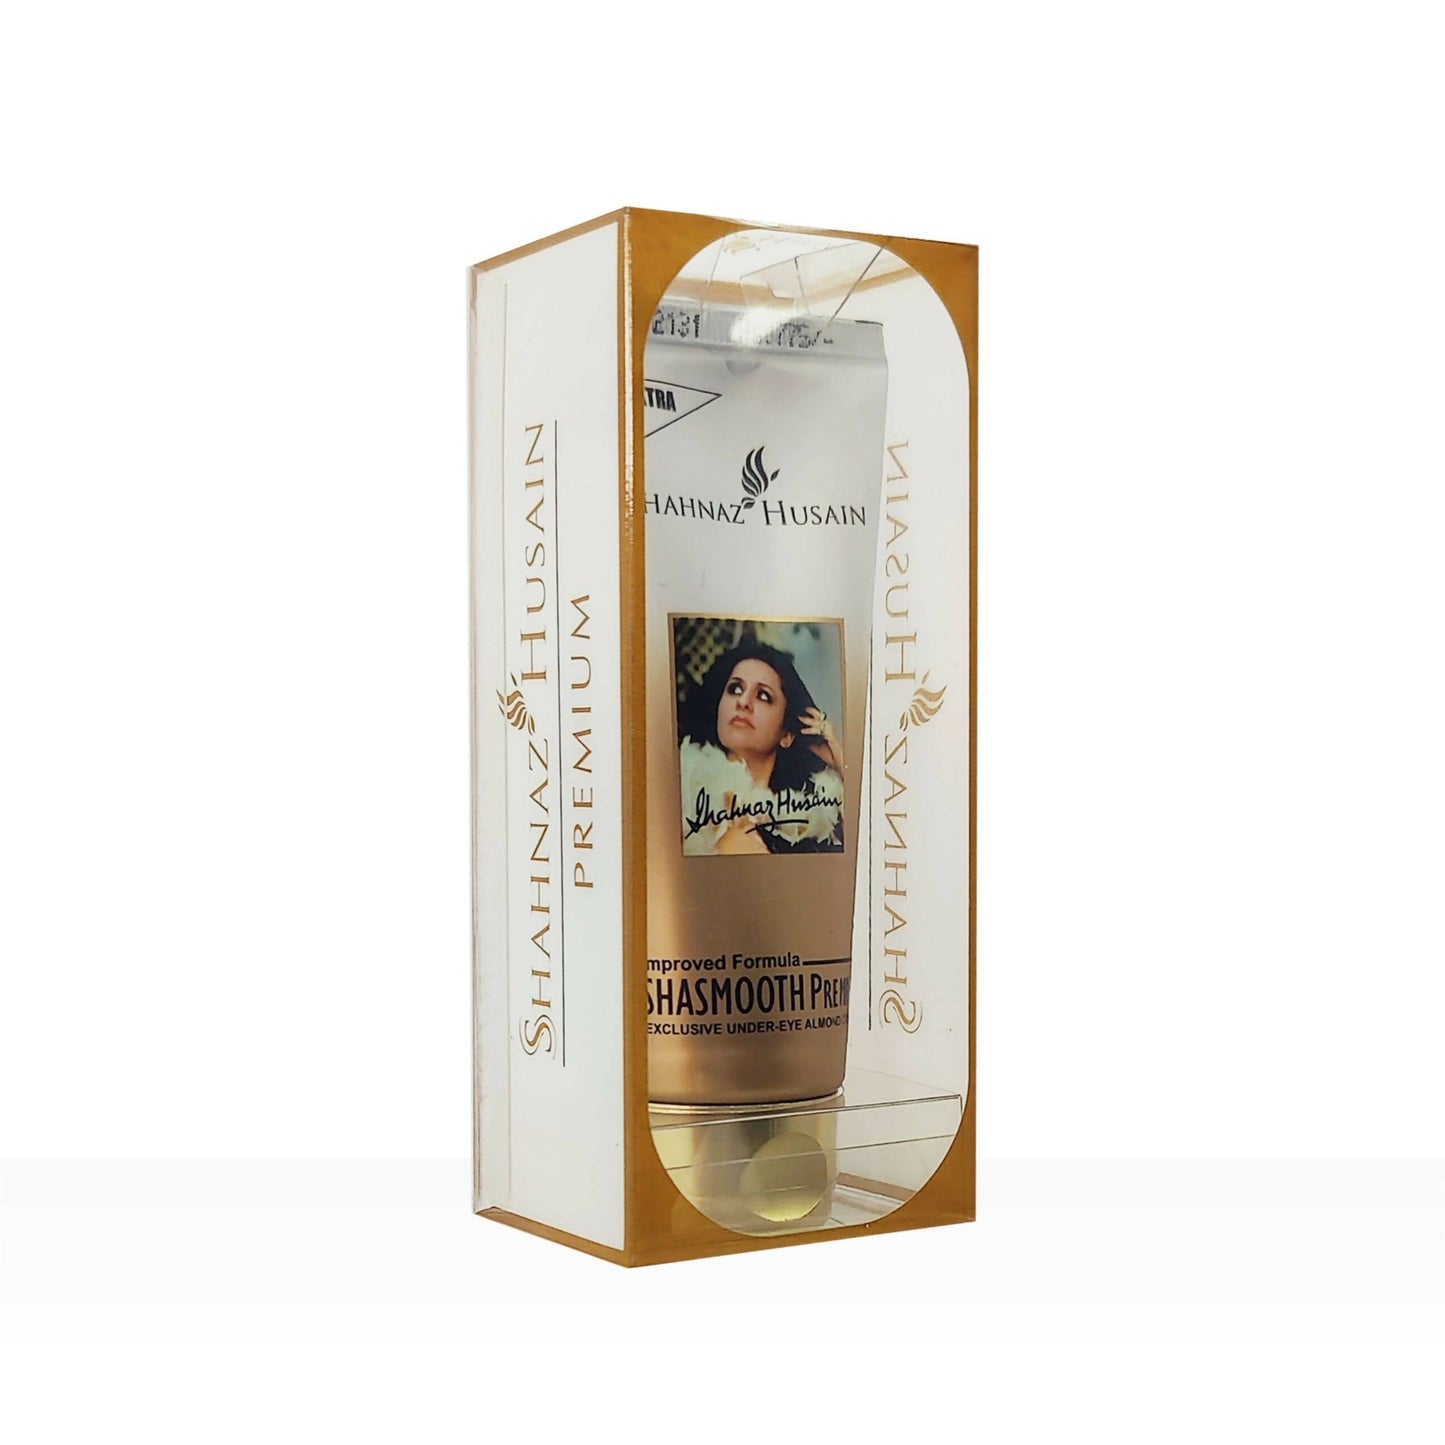 Shahnaz Husain Shasmooth Premium Under Eye Almond Cream